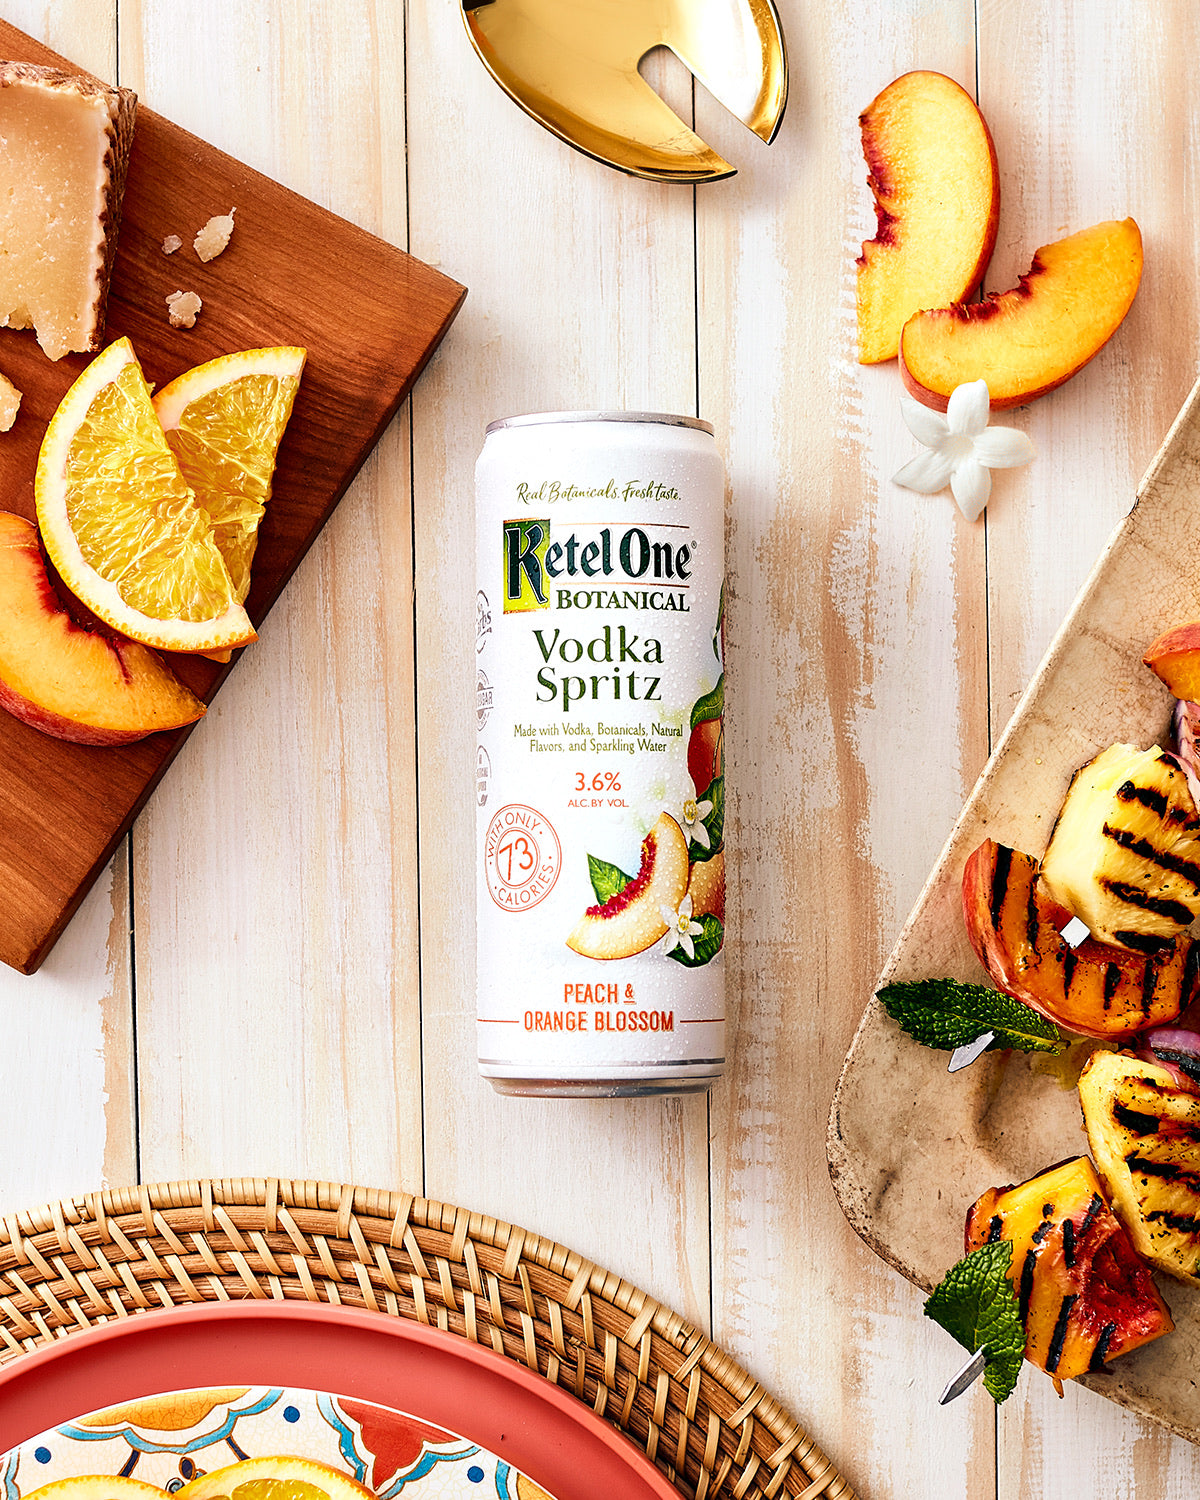 Ketel One Vodka Spritz Peach & Orange Blossom 4 pack